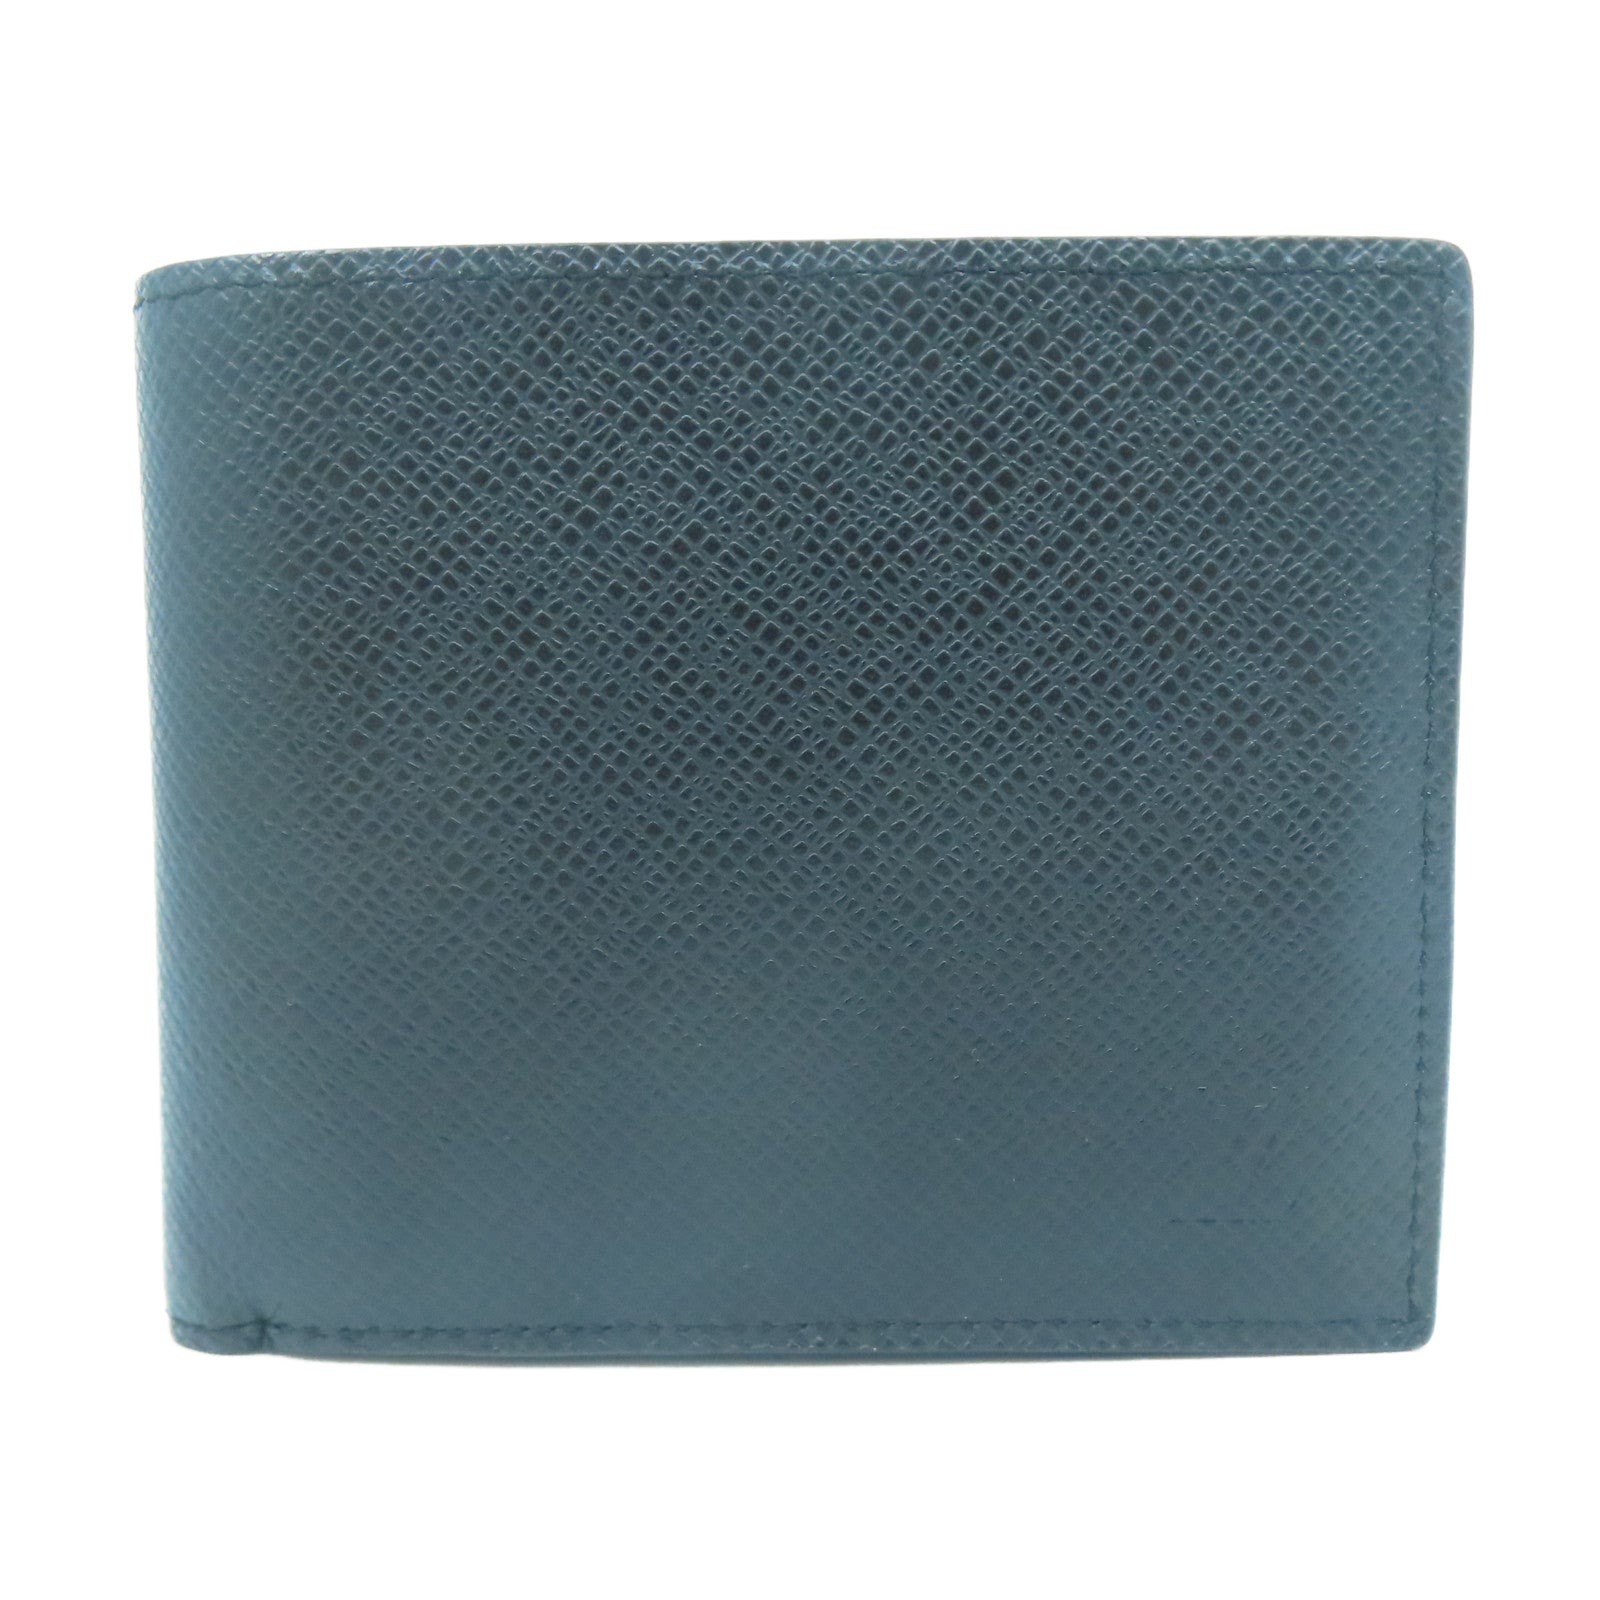 Shop Louis Vuitton TAIGA Amerigo wallet (M62045) by Bellaris